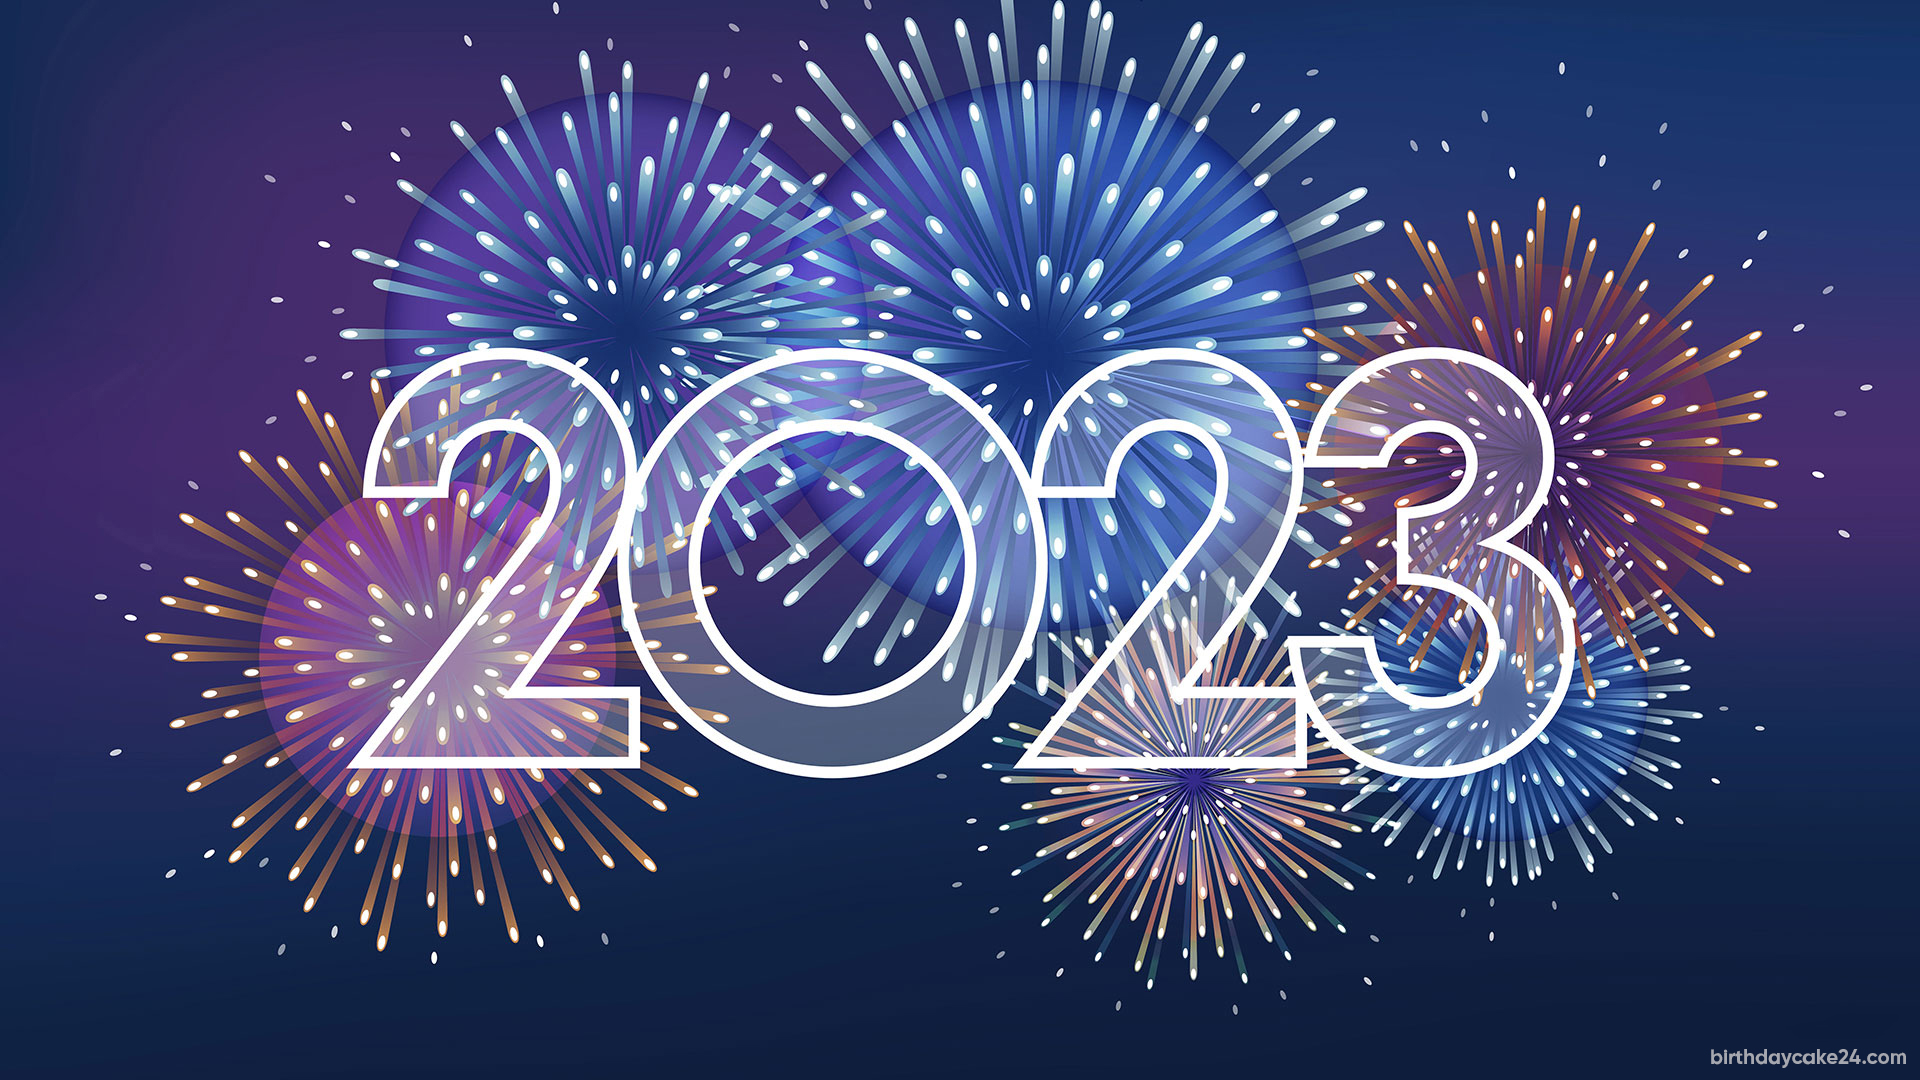 Hình nền pháo hoa năm mới 2024 sẽ khiến cho bạn như đang đứng trong một vũ trụ đầy màu sắc và lung linh. Từ những bức hình về pháo hoa 3D cho đến những pháo hoa truyền thống, bạn sẽ có những trải nghiệm tuyệt vời trong đêm giao thừa năm mới.